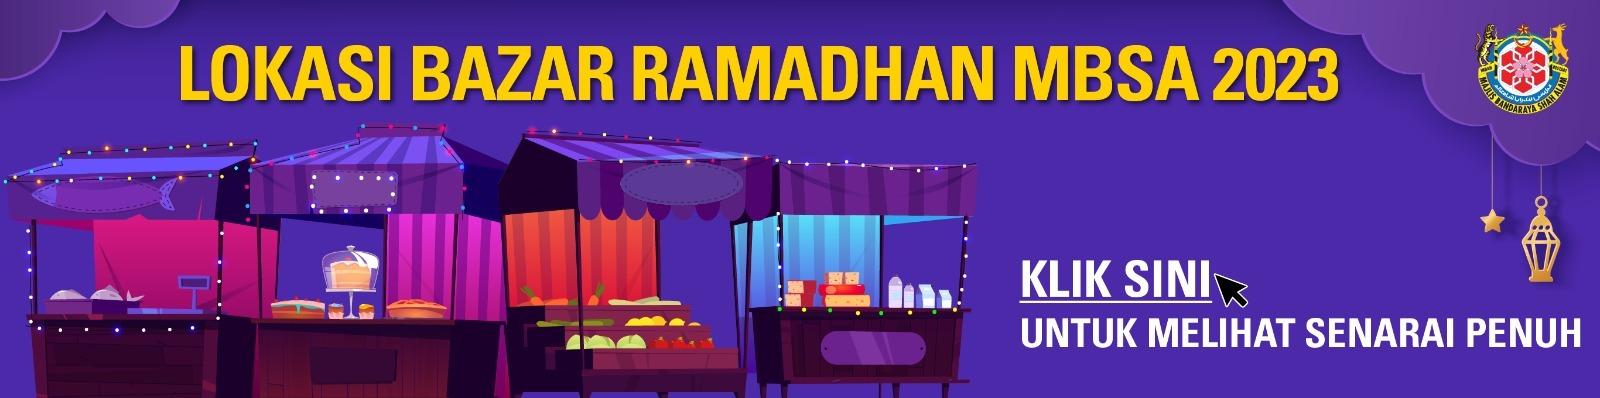 Senarai Bazar Ramadan MBSA 2023